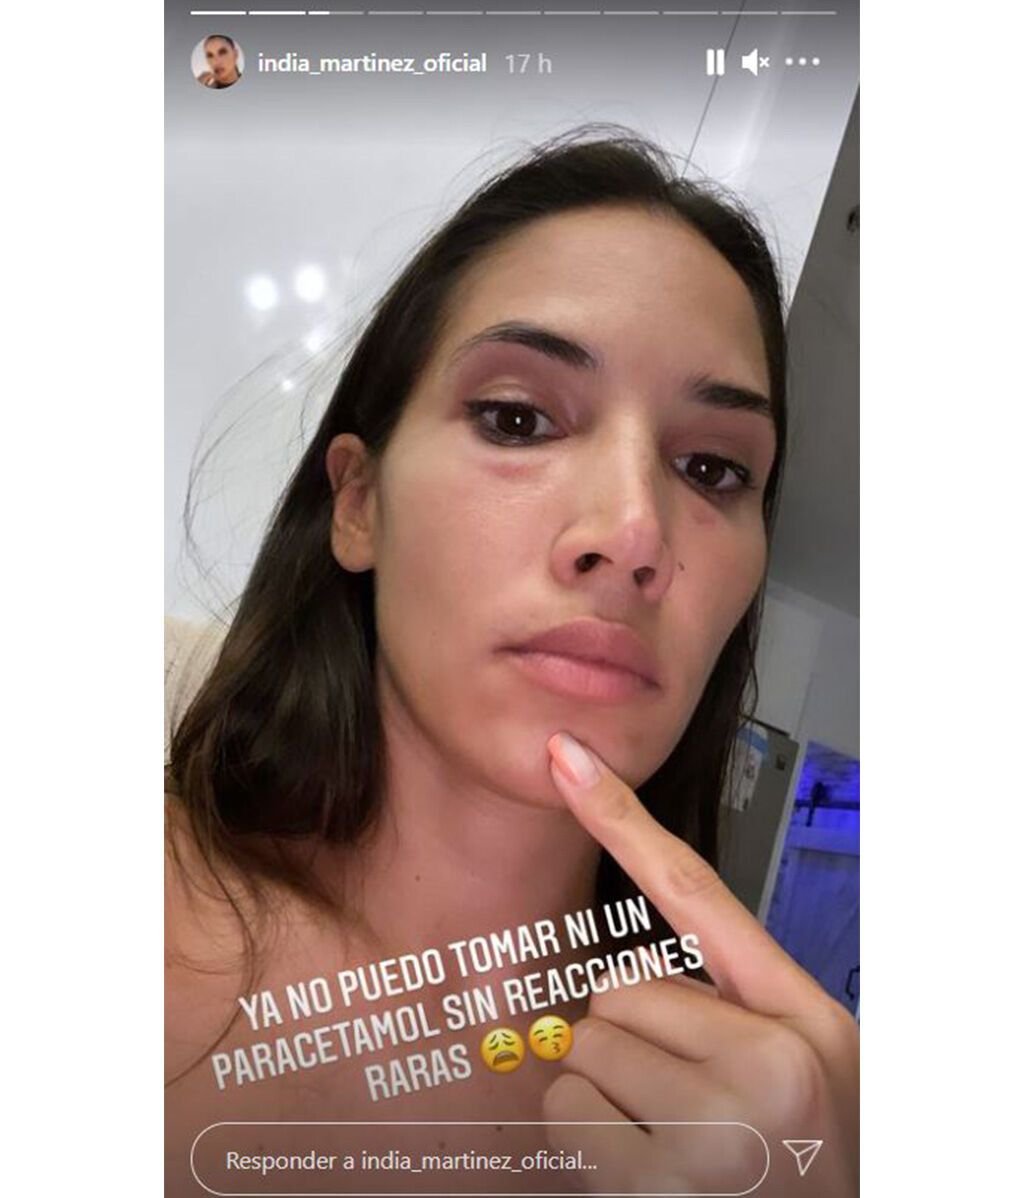 India Martínez sufre una fuerte reacción alérgica